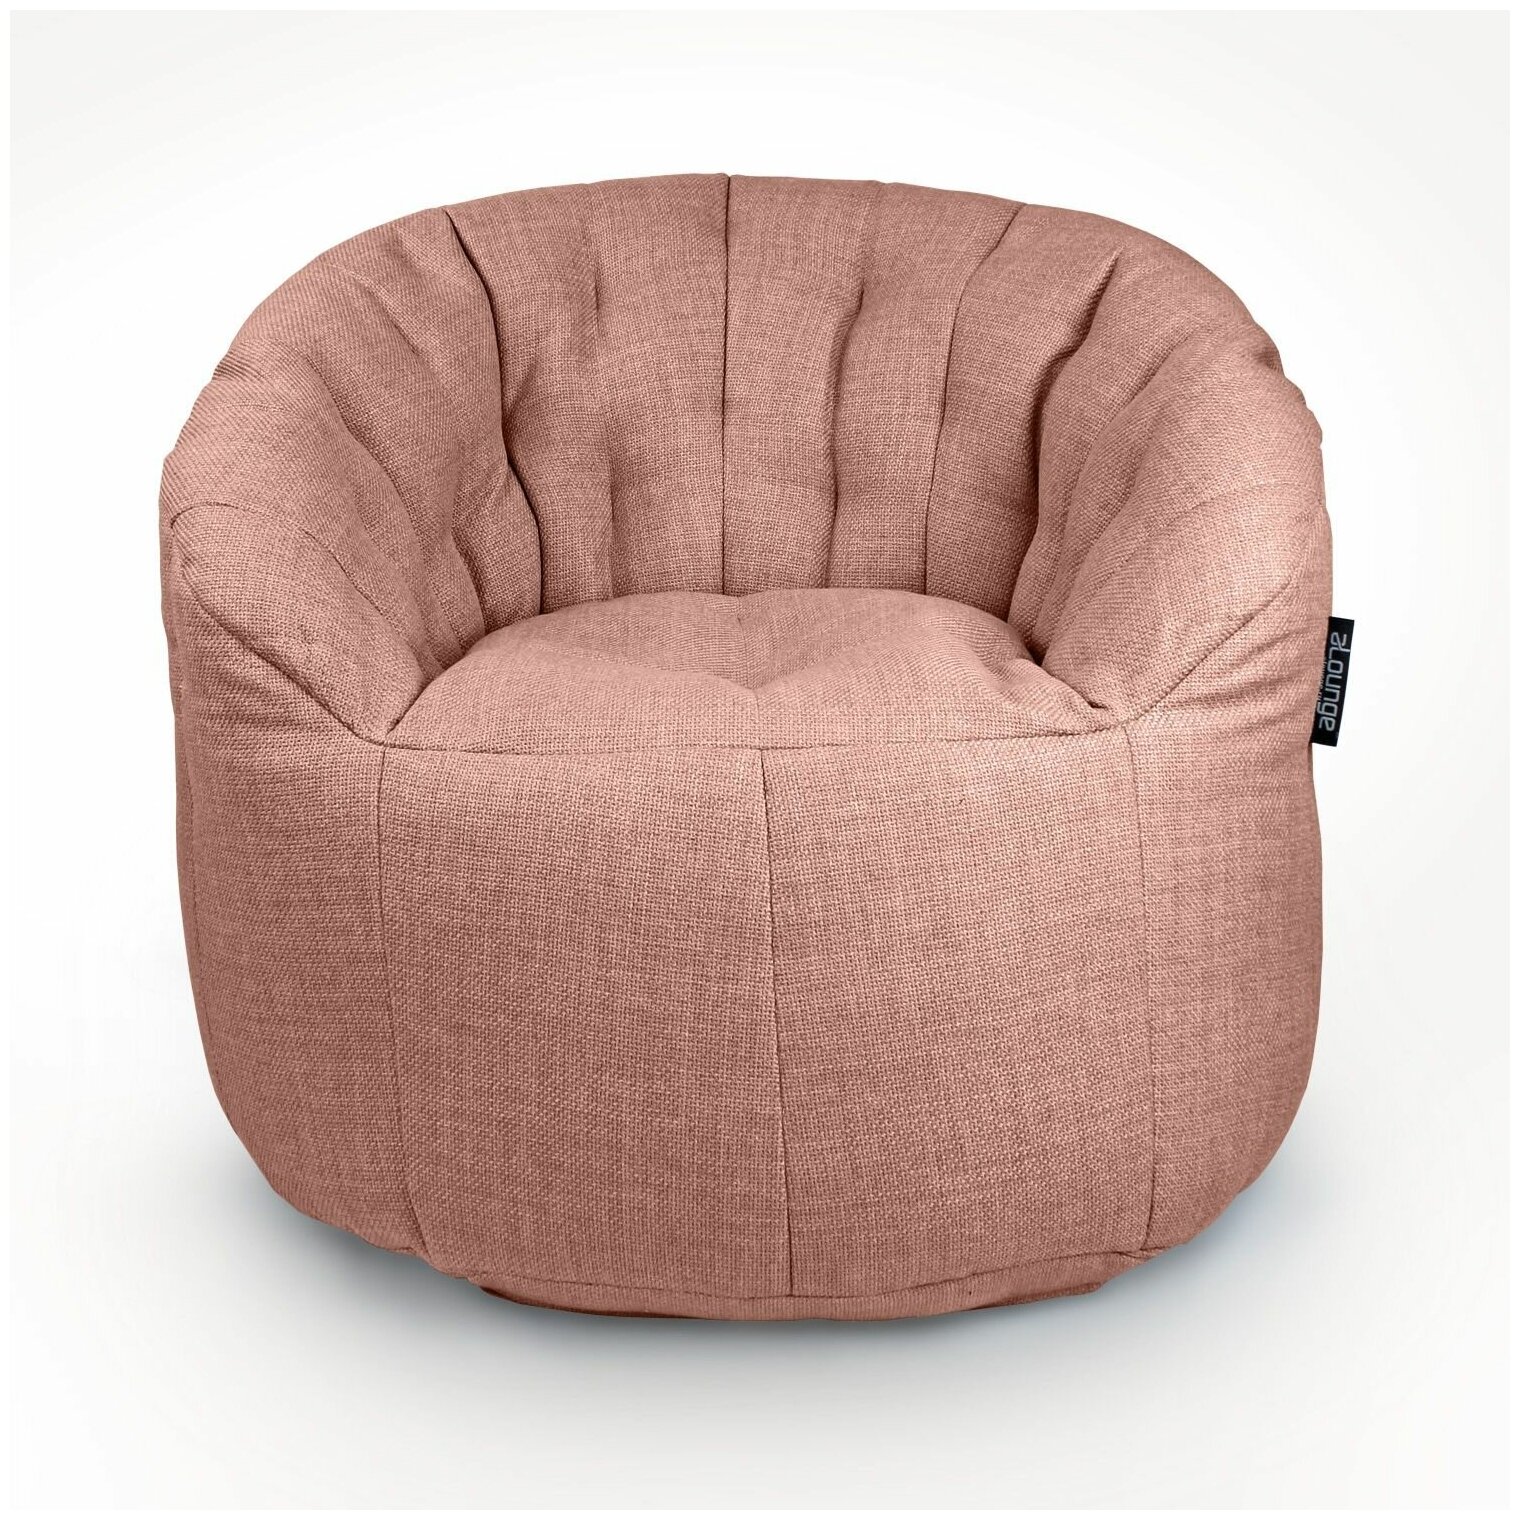 Современное бескаркасное кресло для отдыха дома aLounge - Butterfly Sofa - Sakura Pink (рогожка, розовый) - мягкая мебель в гостиную, спальню, детскую, офис, на балкон, дачу